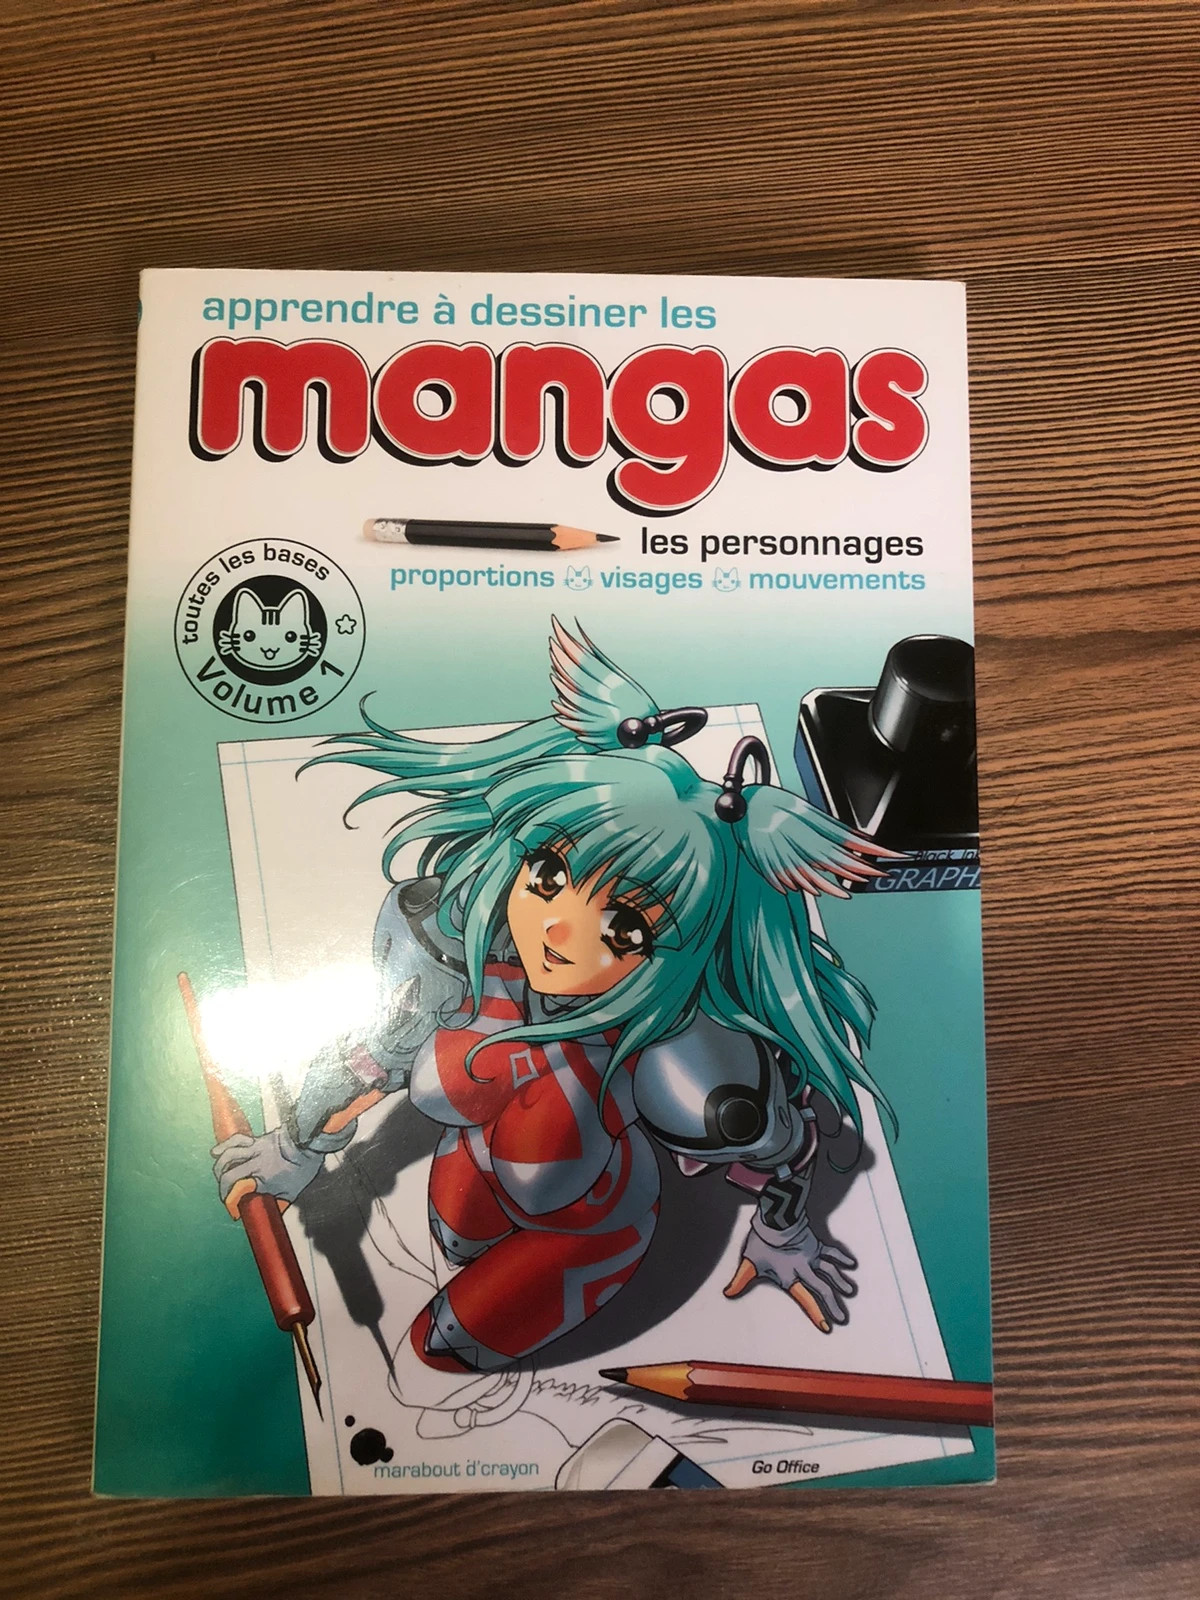 Apprendre à dessiner les mangas – Un livre pour apprendre les